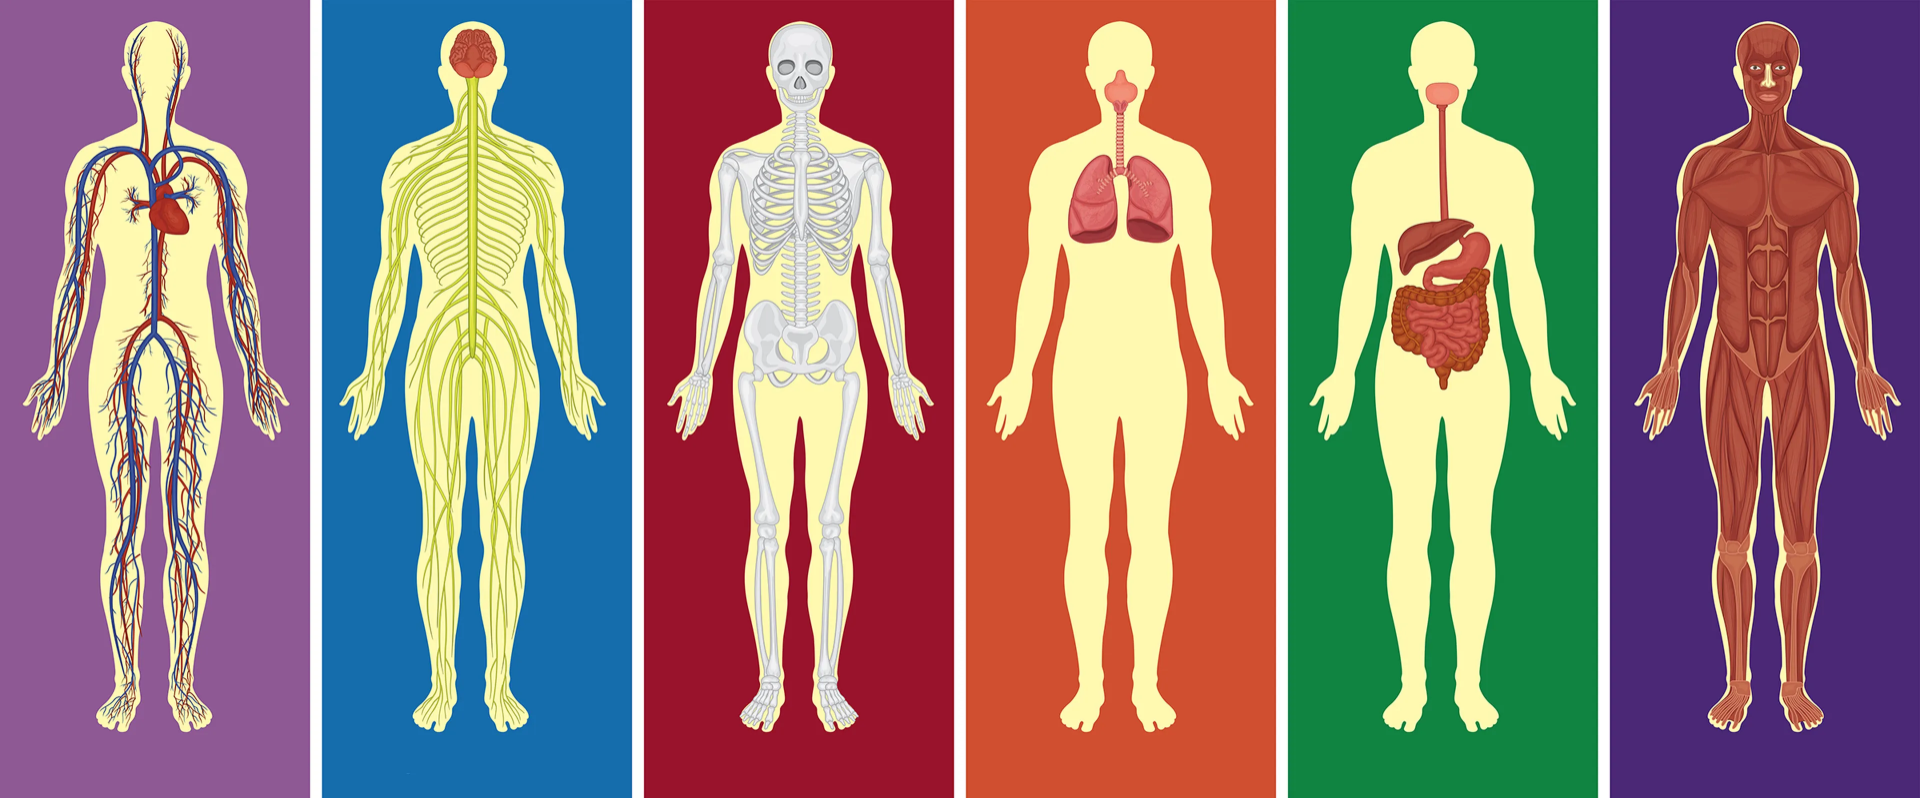 10 Datos Curiosos sobre el Cuerpo Humano